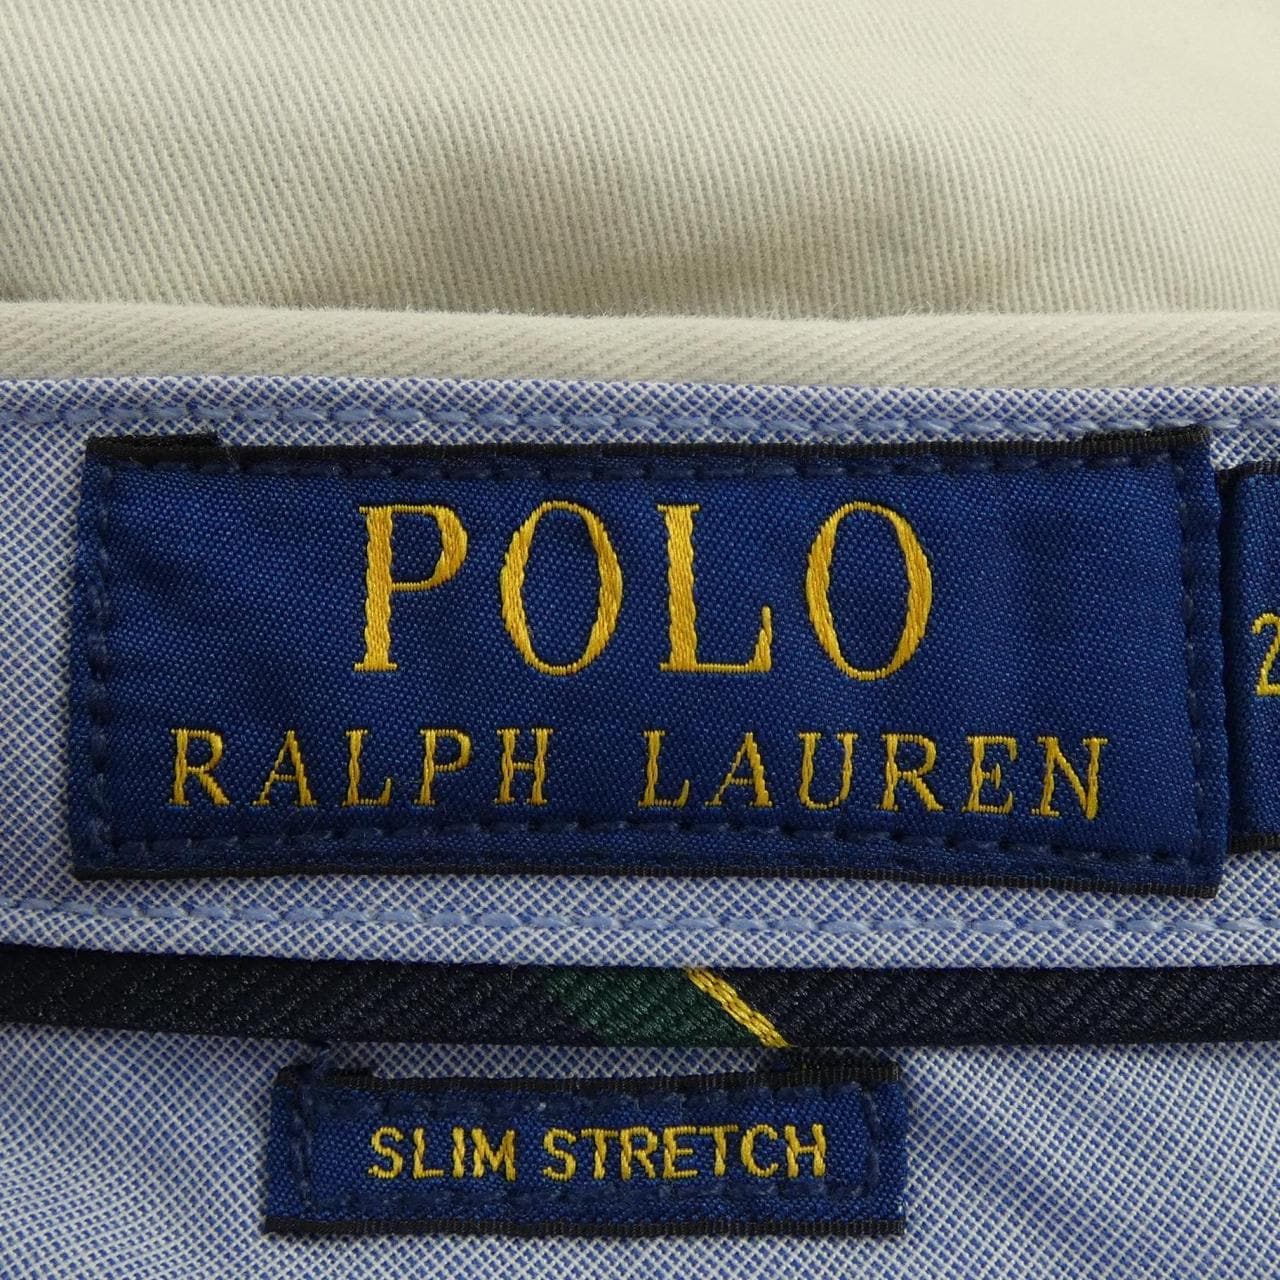 POLO POLO RALPH LAUREN裤子